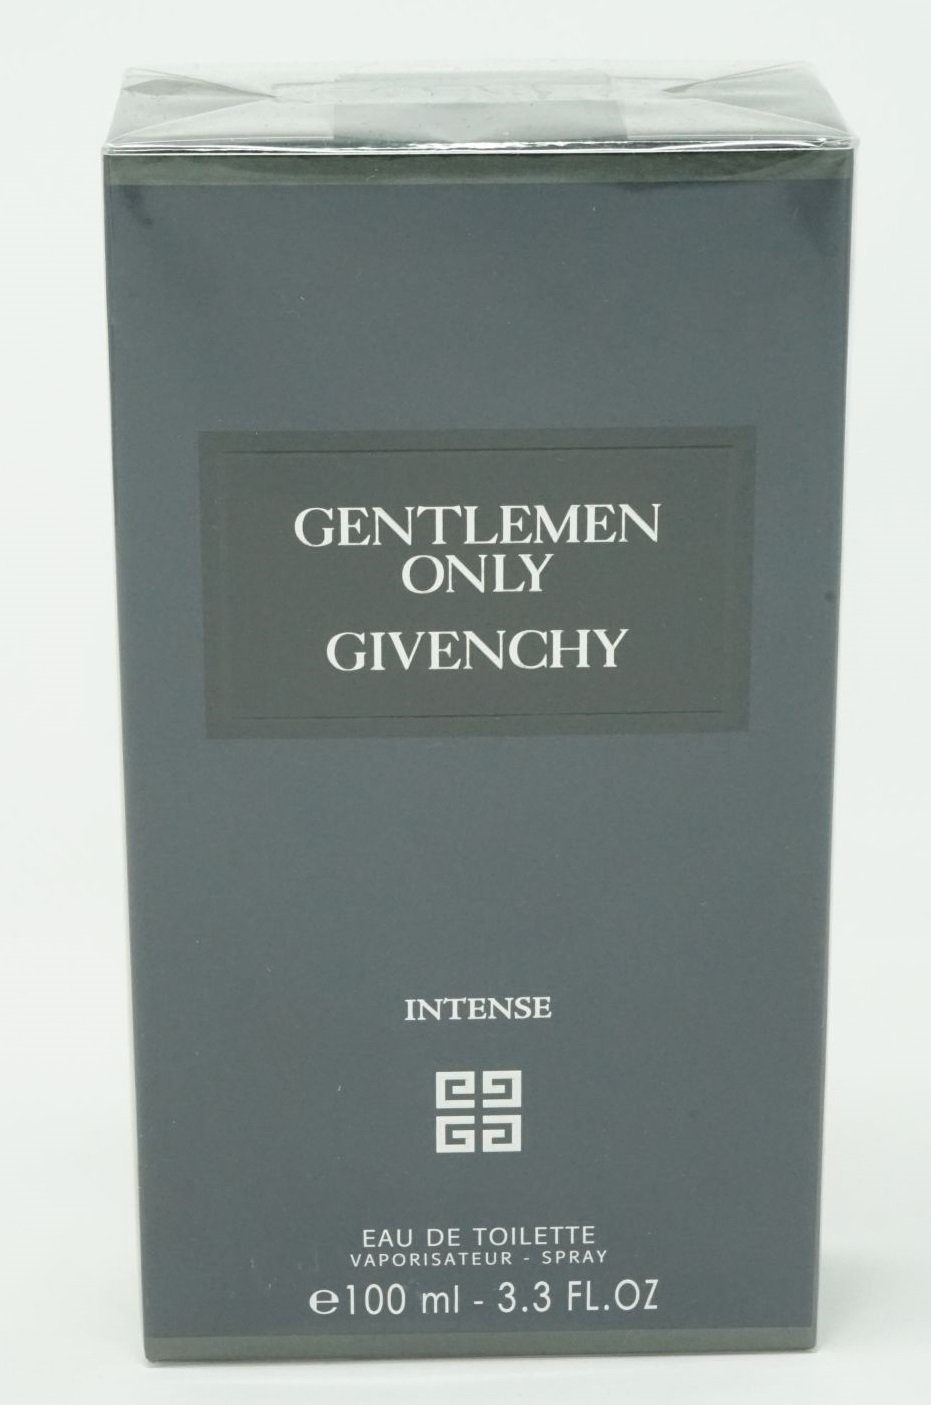 GIVENCHY Eau de Toilette Givenchy Gentlemen Only Intense Eau de Toilette 100ml | Eau de Toilette